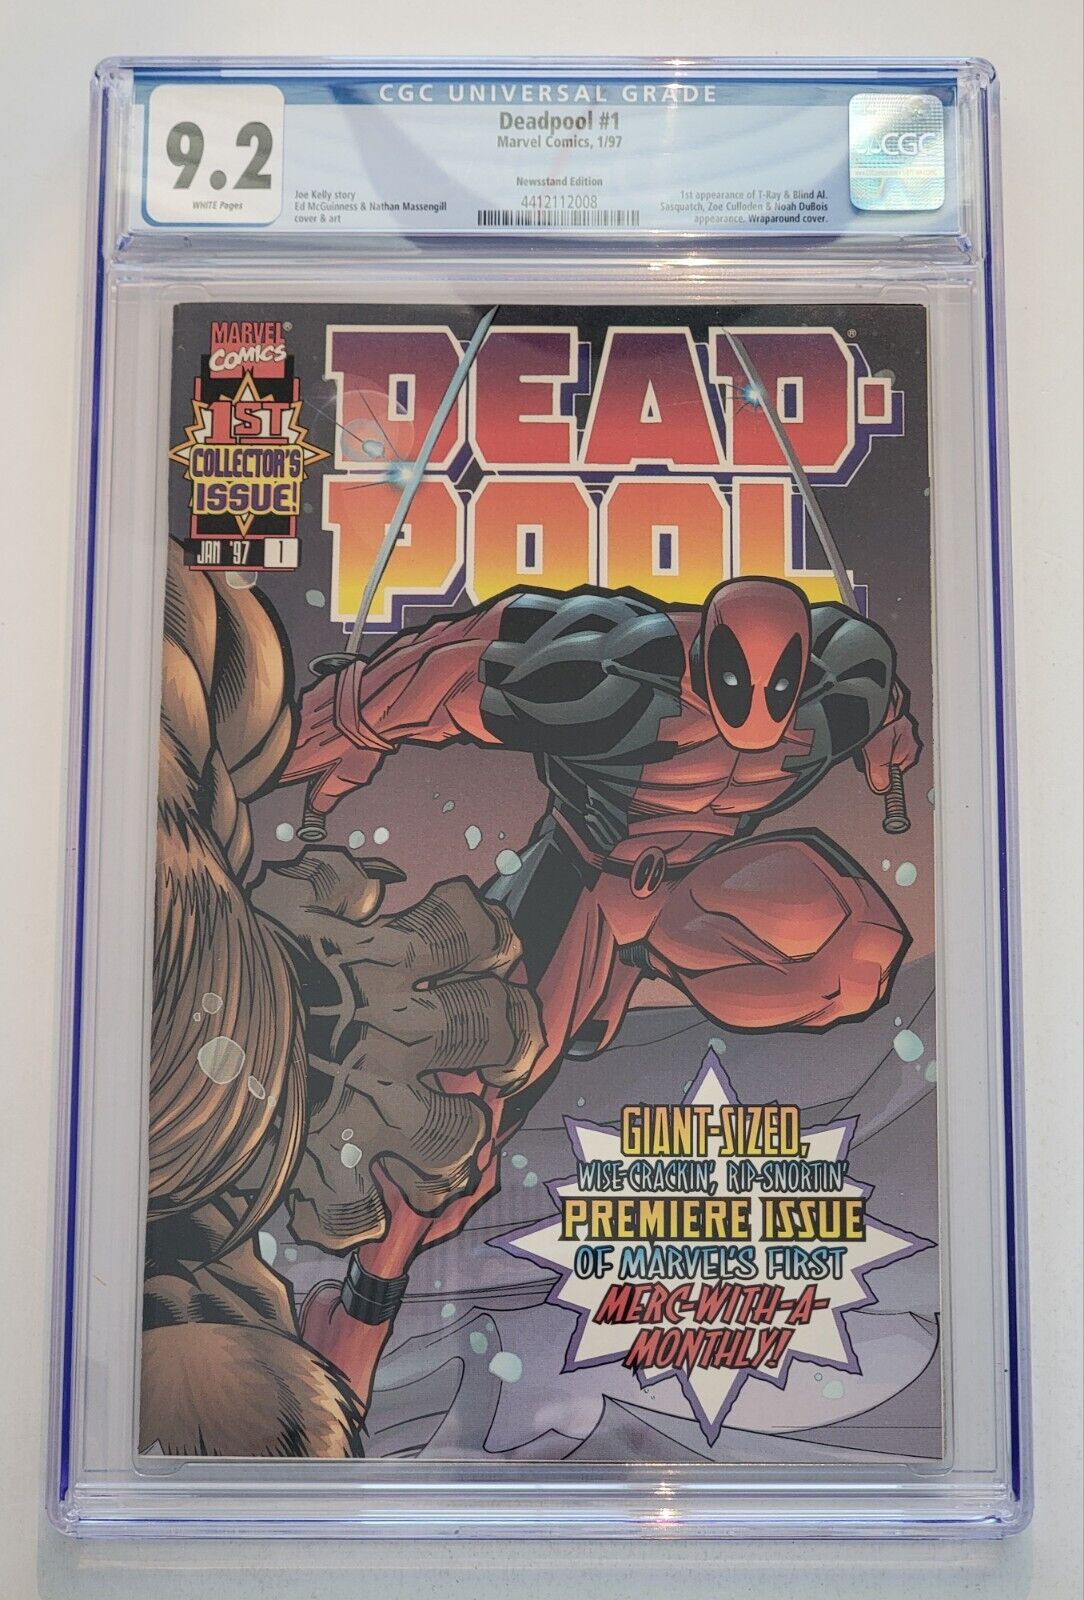 Deadpool #1 CGC 9.2 Newsstand 1st App Blind AL 1st Deadpool Ongoing Series 1997